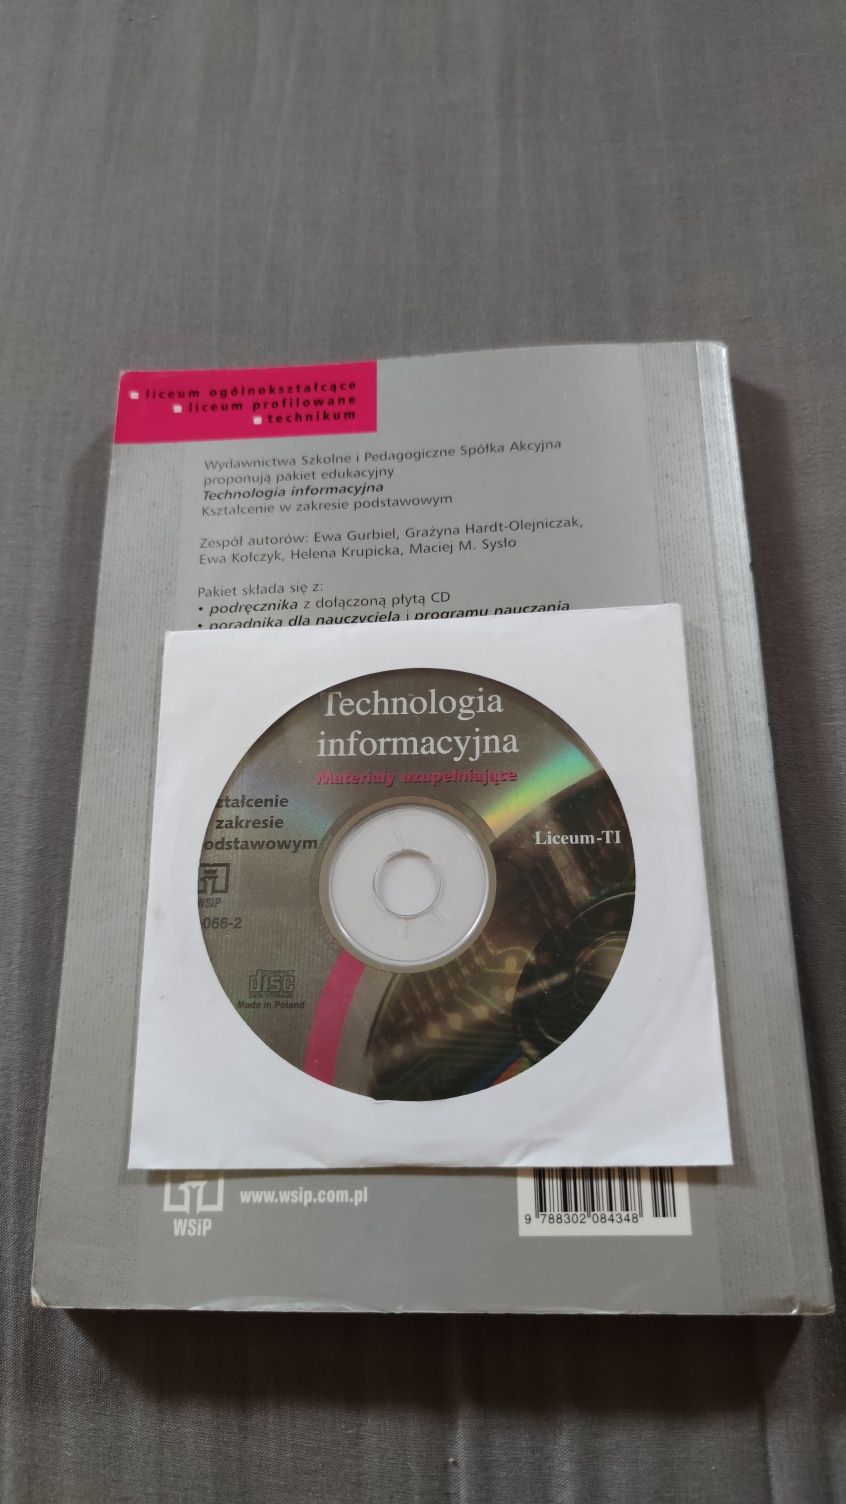 Podręcznik Technologia informacyjna z płytą CD